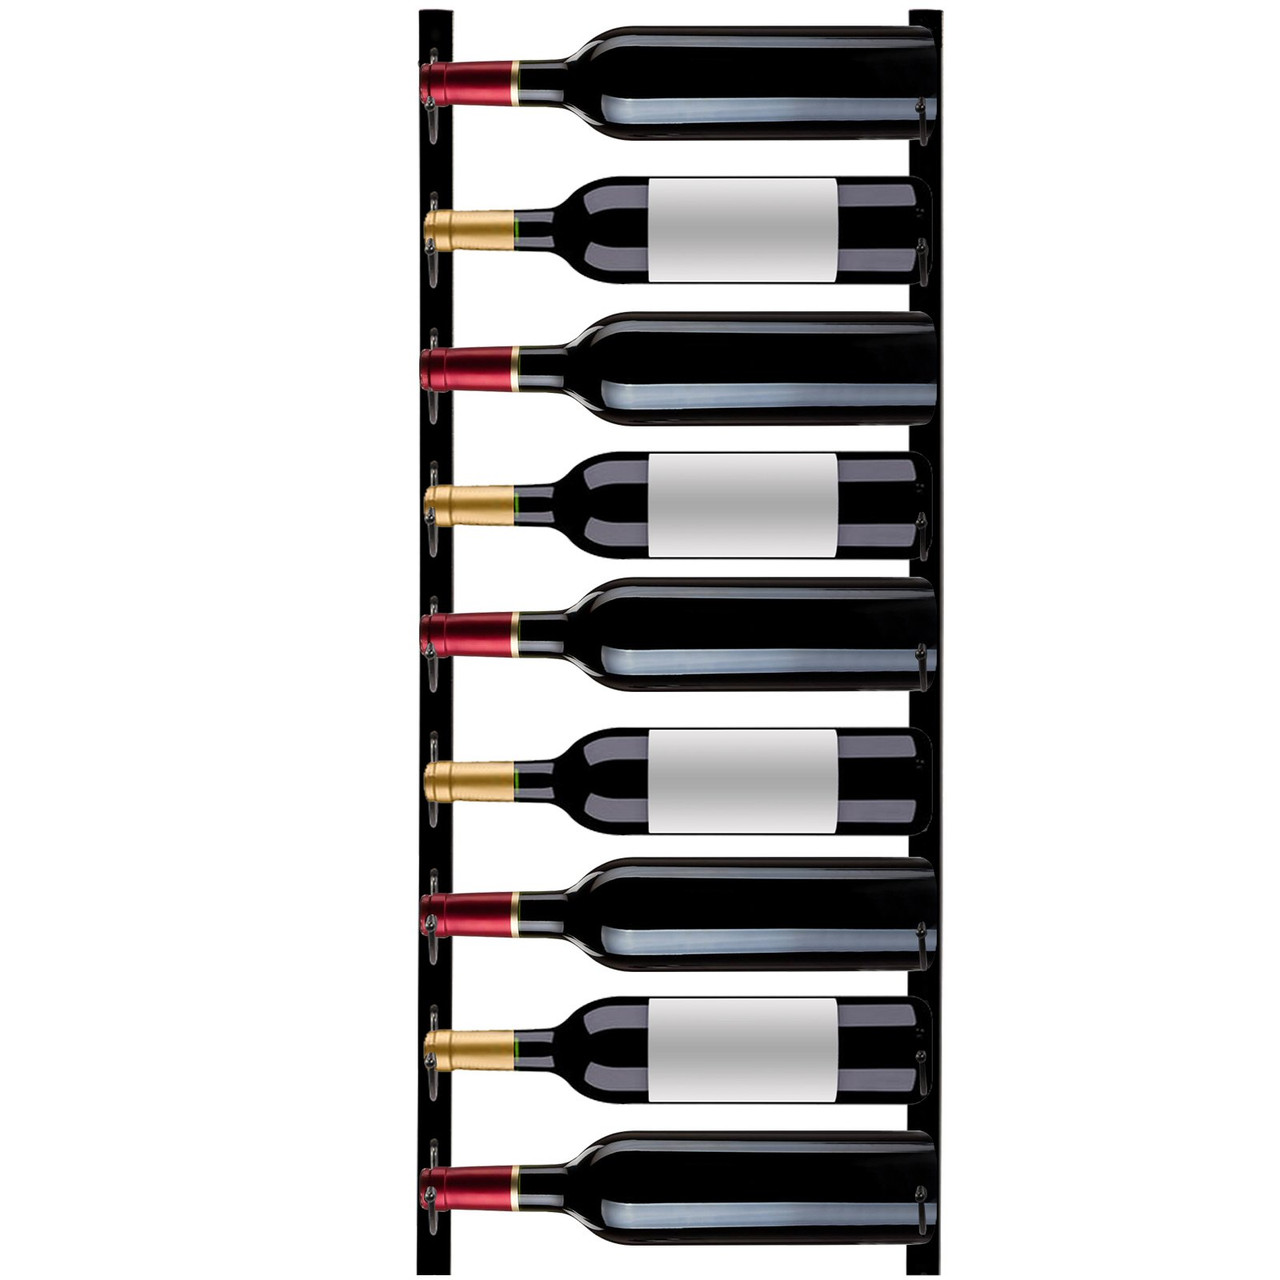 Wall Mounted Wine Rack, 9 Bottles Wine Holder Towel Rack, Black Steel Vertical Wine Rack, Modern Decorative Wall Mounted Wine Bottle Holder, Forward Design Simple Storage Wall Rack 35 x 6 x 1 In